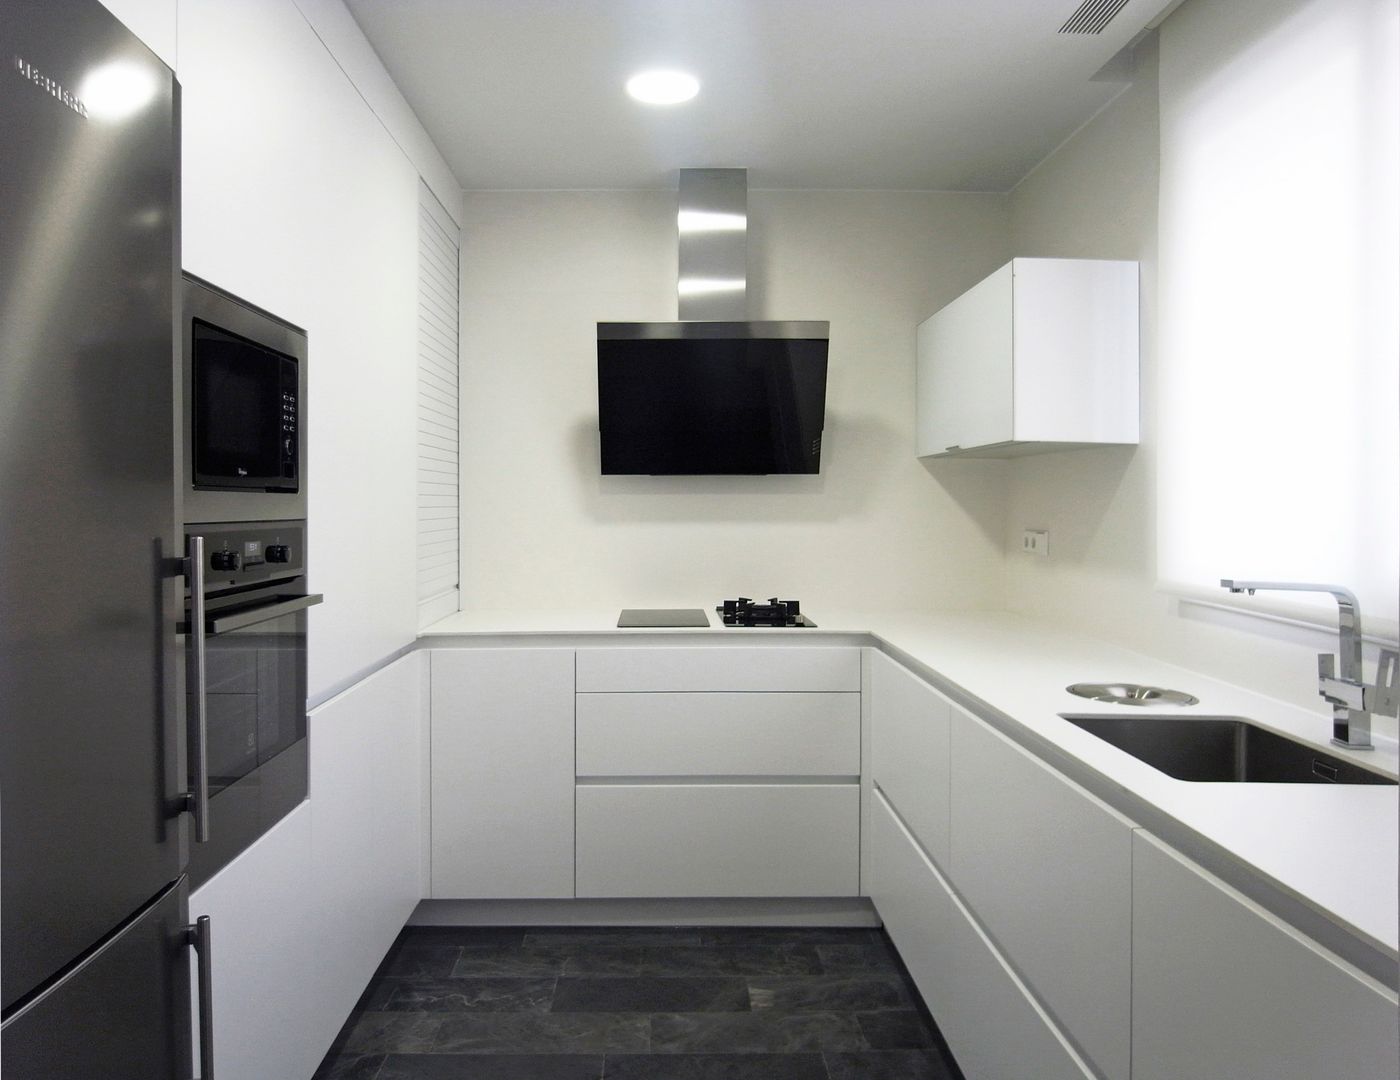 Taller transformado en vivienda, Taller 582 Taller 582 Modern kitchen